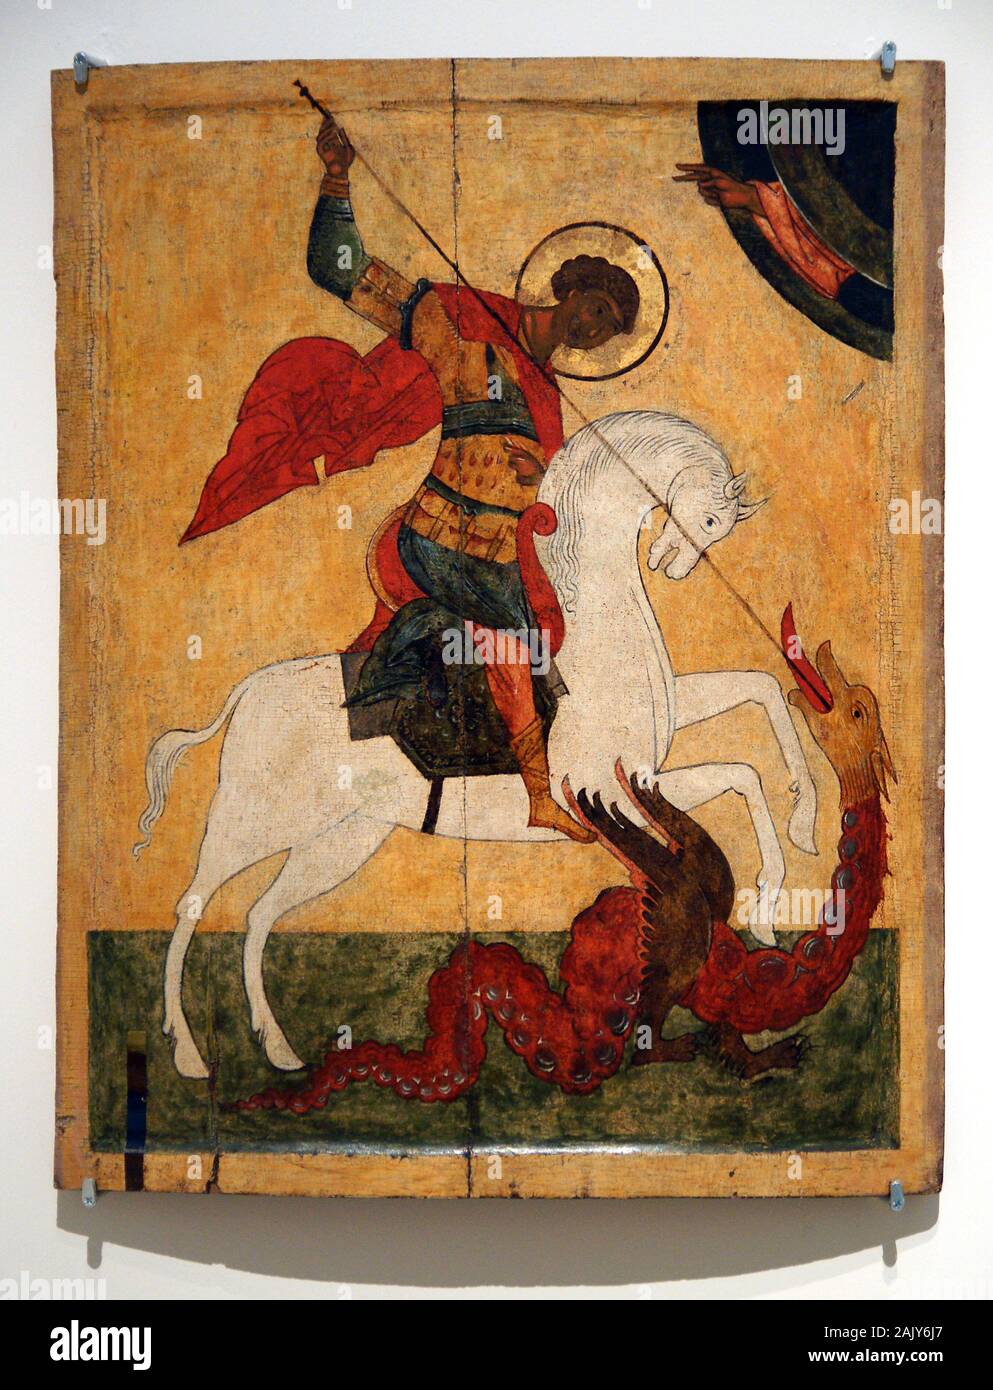 Symbol der Malerei. Das Wunder von St. George und der Drache. (1500-1550), nördlichen Russland. Lindenholz, Tempera und Vergoldung. Hermitage Museum. Stockfoto